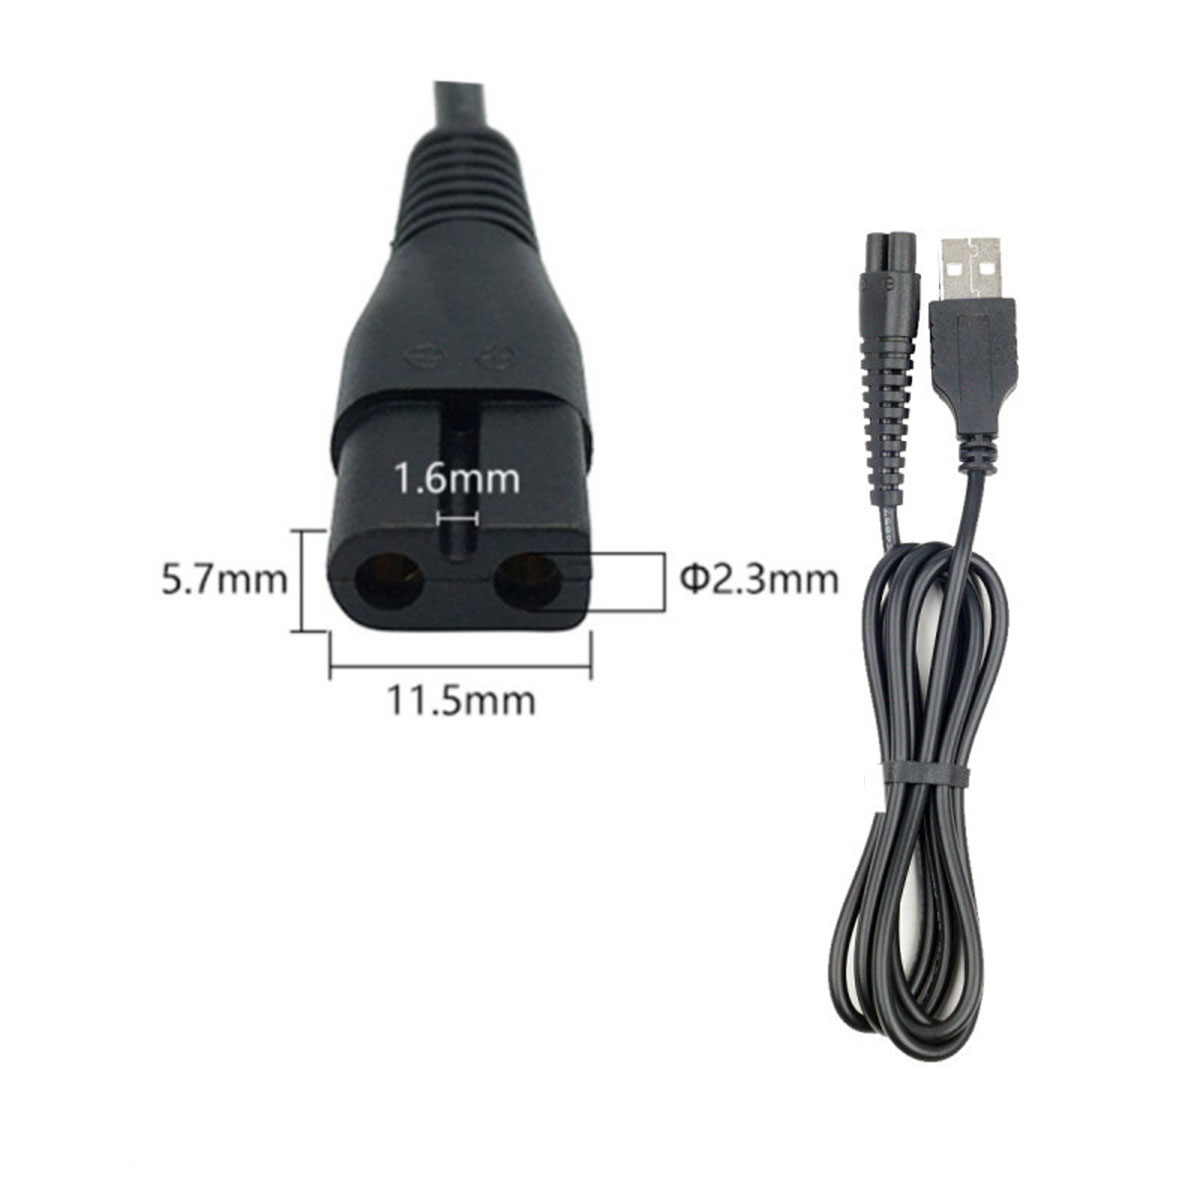 Кабель USB DL42 для зарядки электробритв, длина 1 метр, цвет черный (восьмерка)